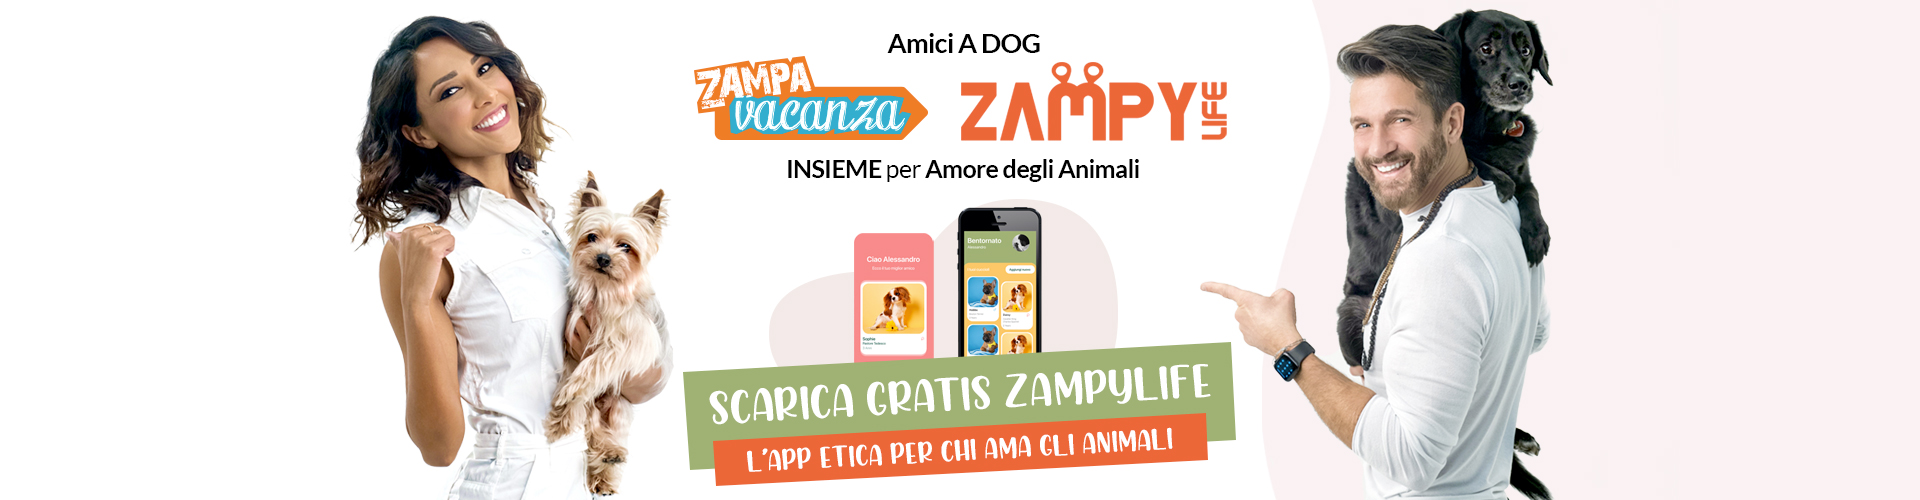 ZAMPYLIFE L’App etica e GRATUITA per chi ama gli animali